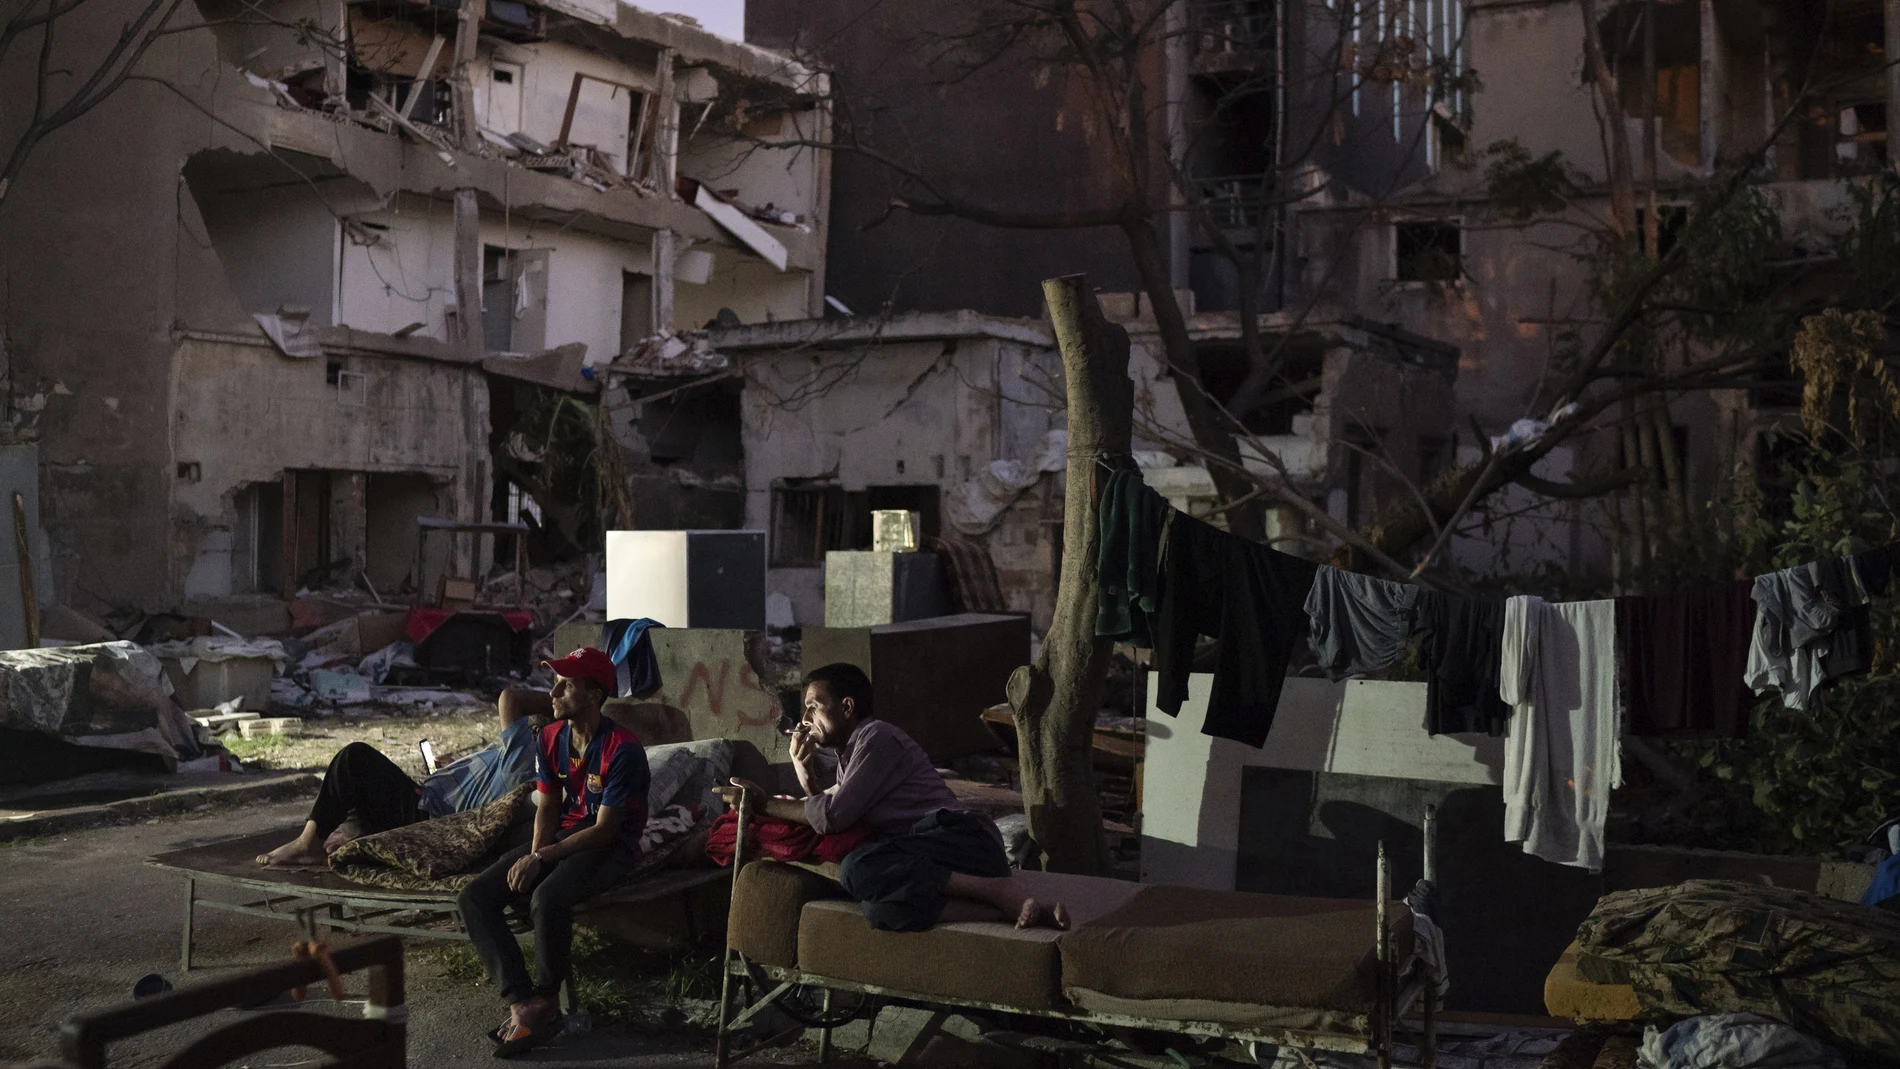 Refugiados sirios descansan en camas en la calle tras la explosión que destruyó el puerto de Beirut el 4 de agosto